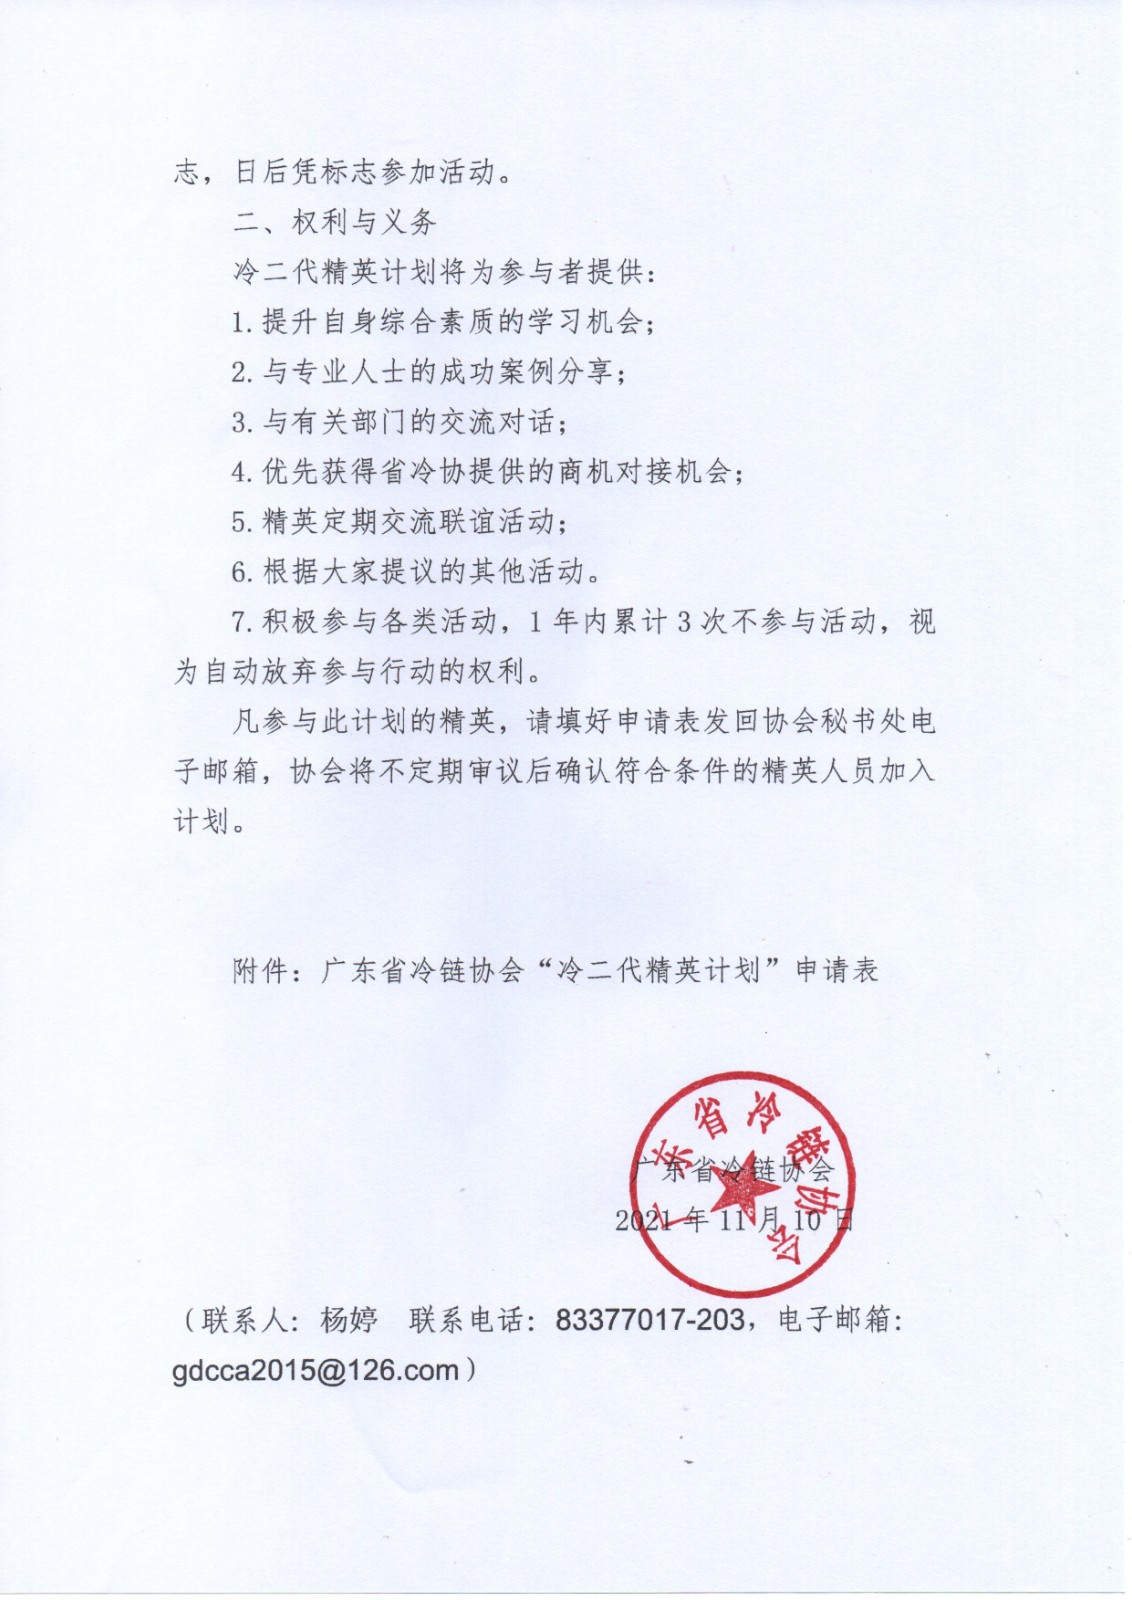 广东省冷链协会关于实施 “冷二代精英计划”的通知1.jpg